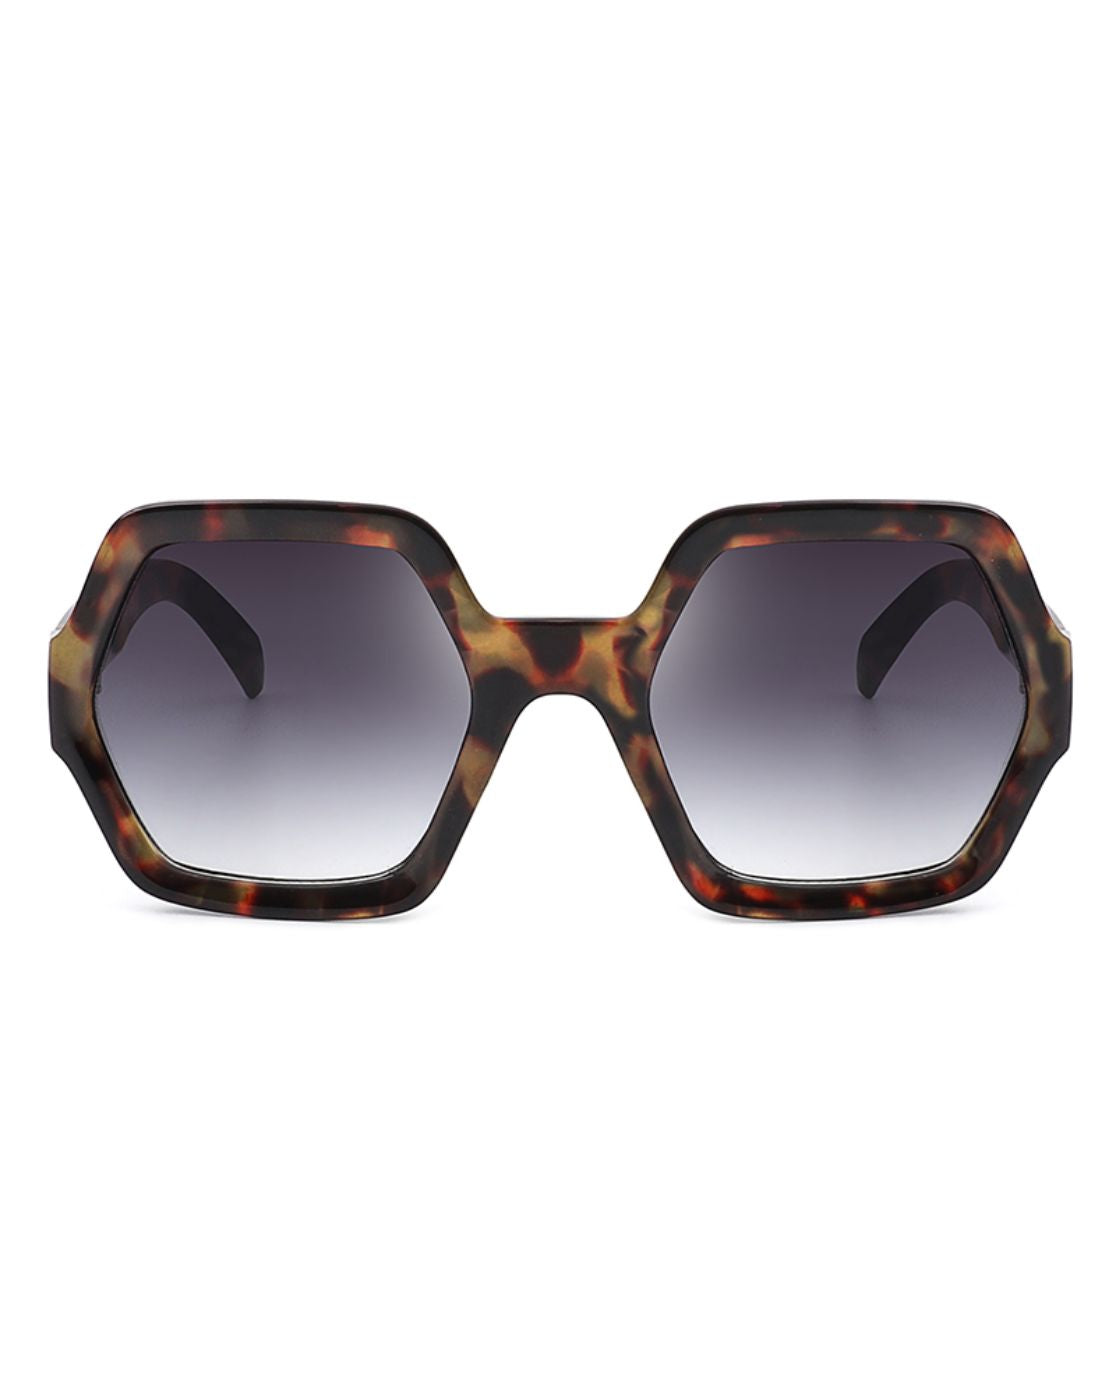 Geometric Oversized Vintage Sunglasses